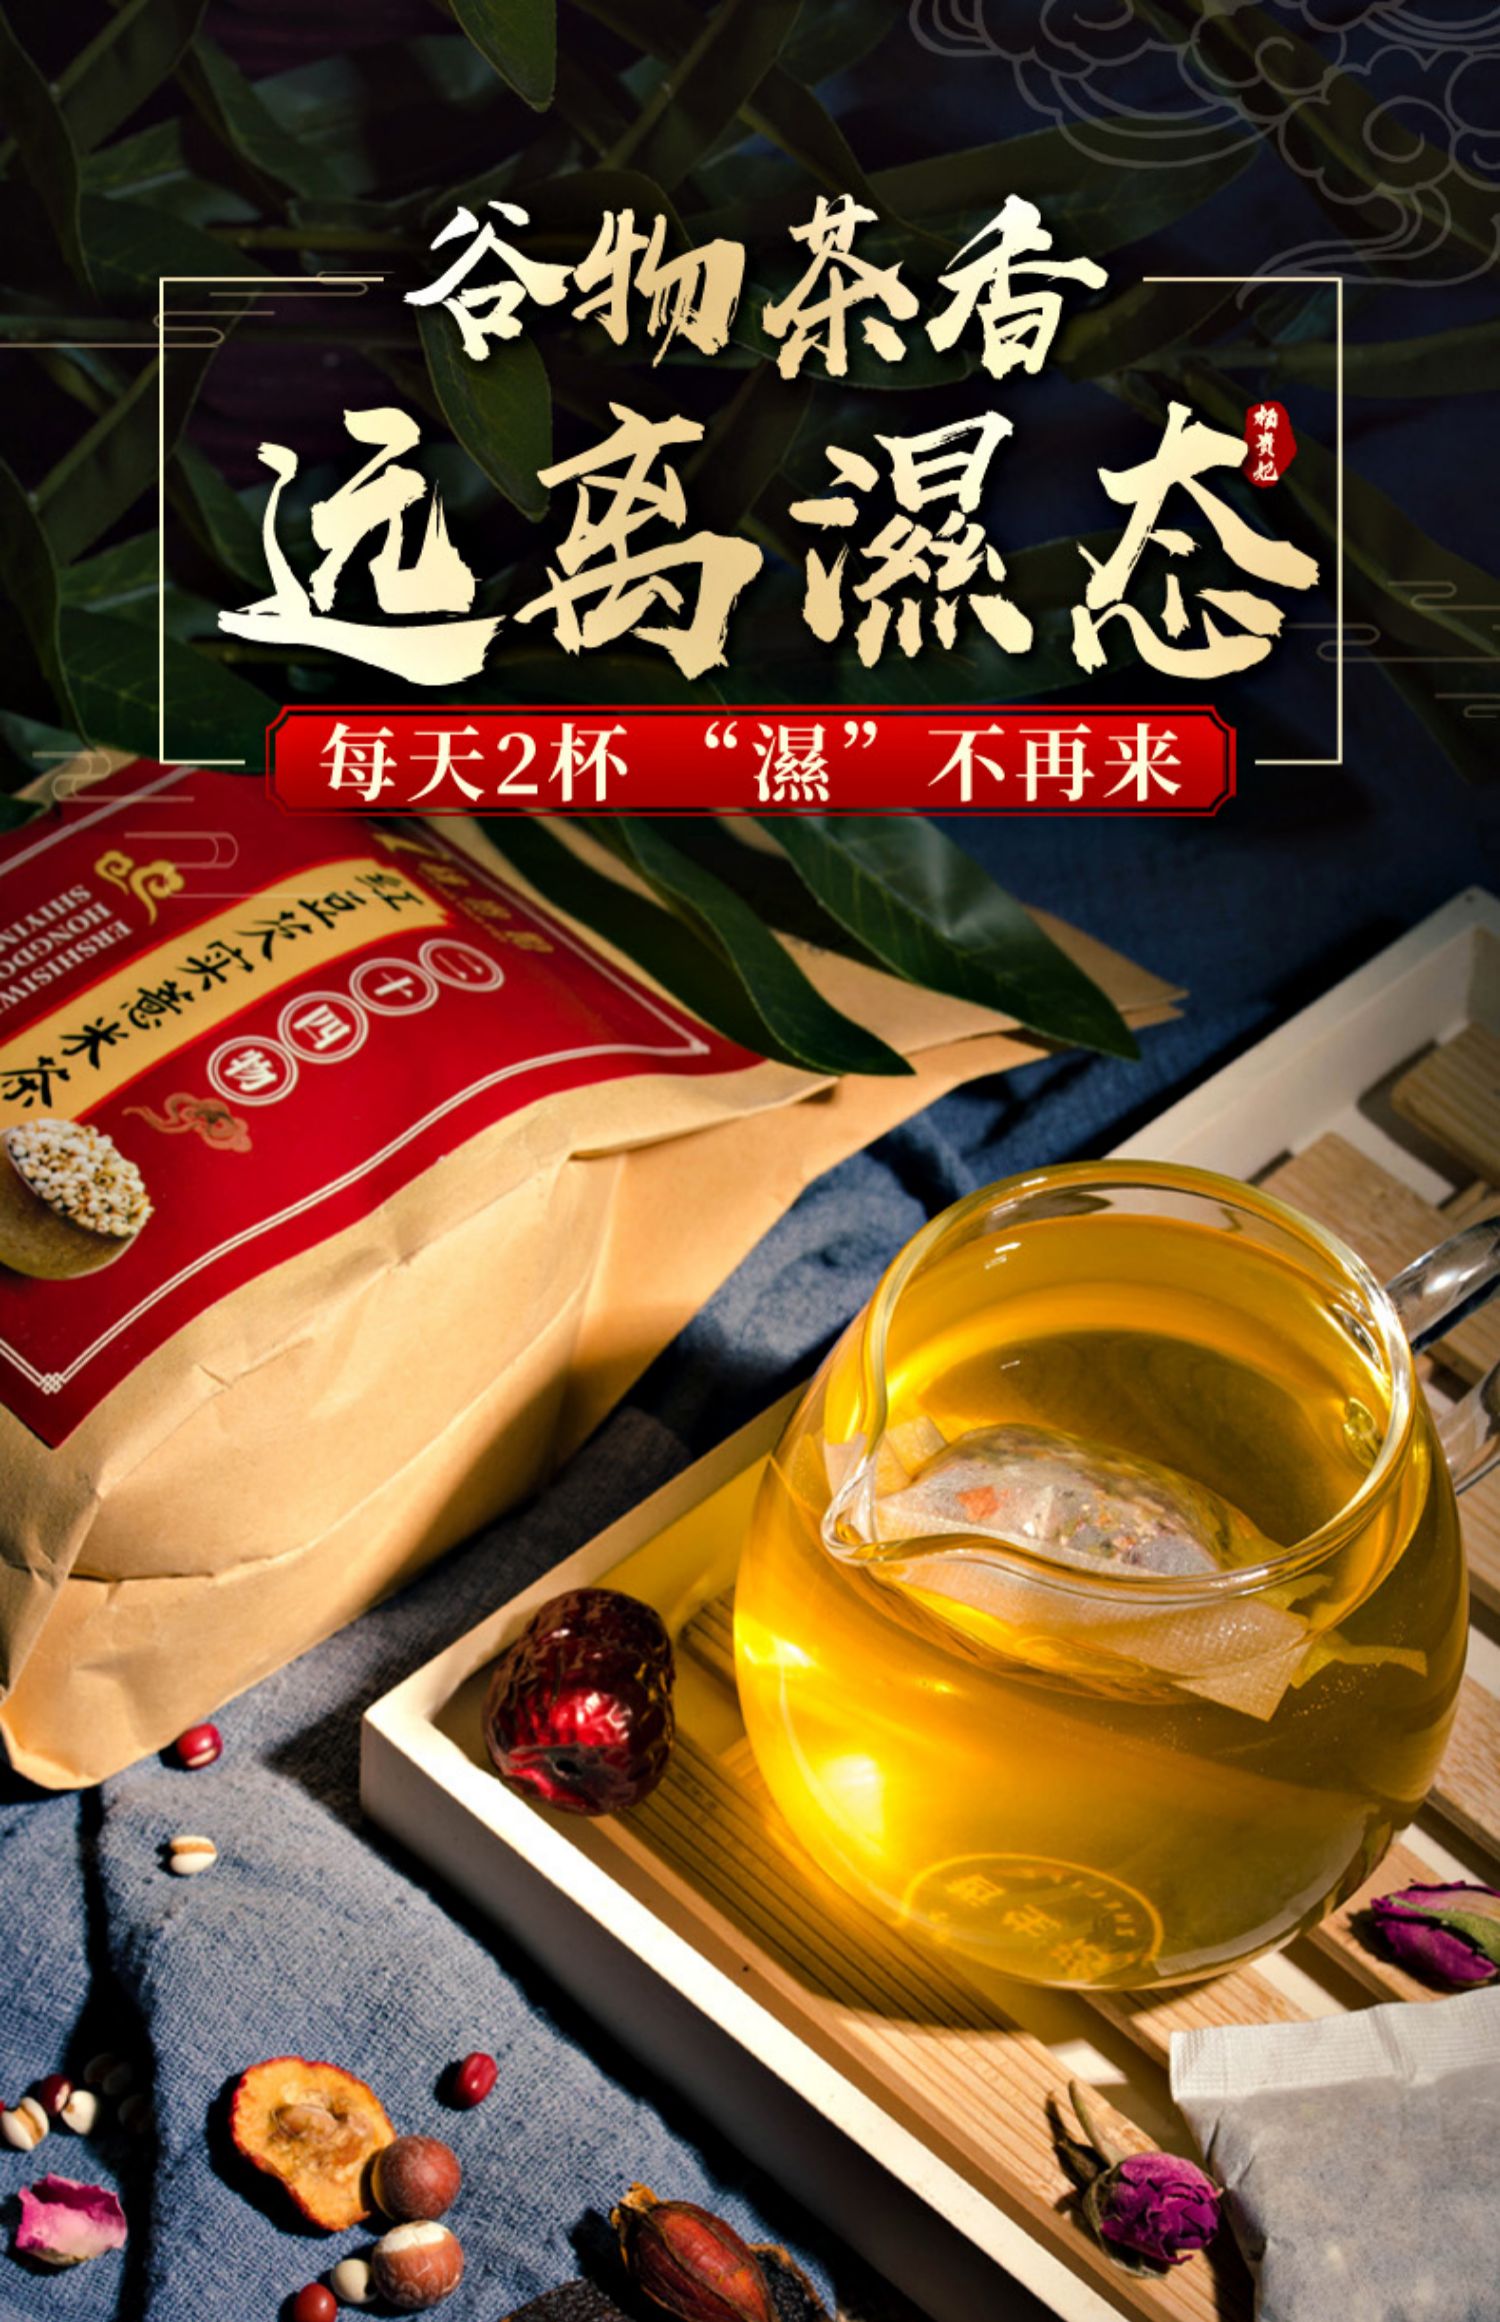 【杨贵妃】红豆薏米茶祛湿养生茶